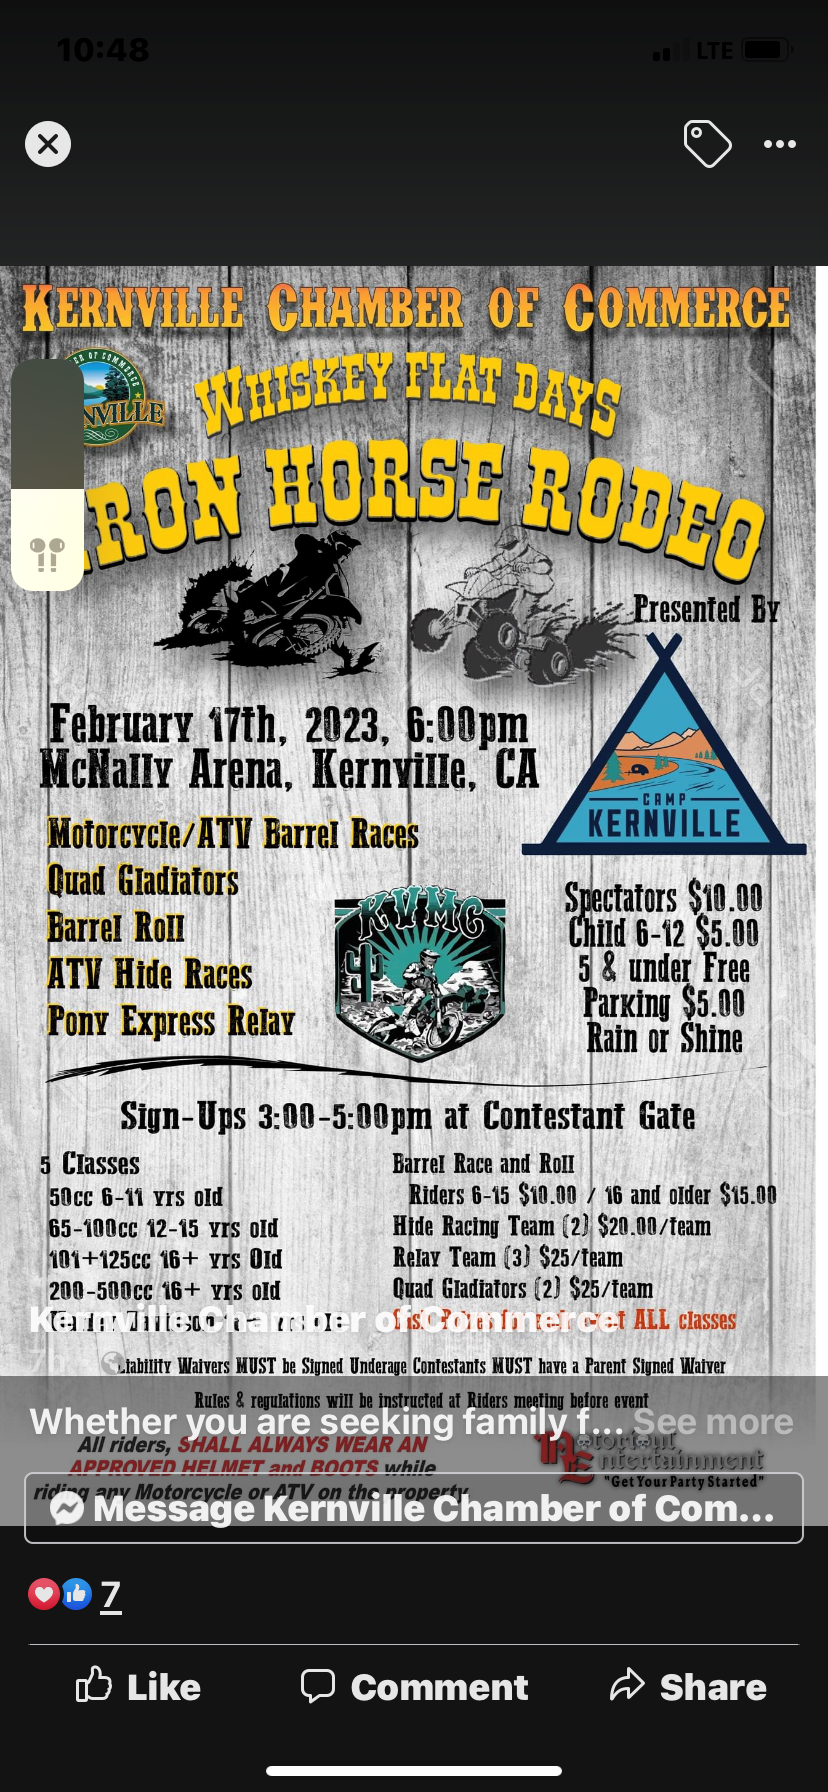 Whiskey Flat Days Iron Horse Rodeo